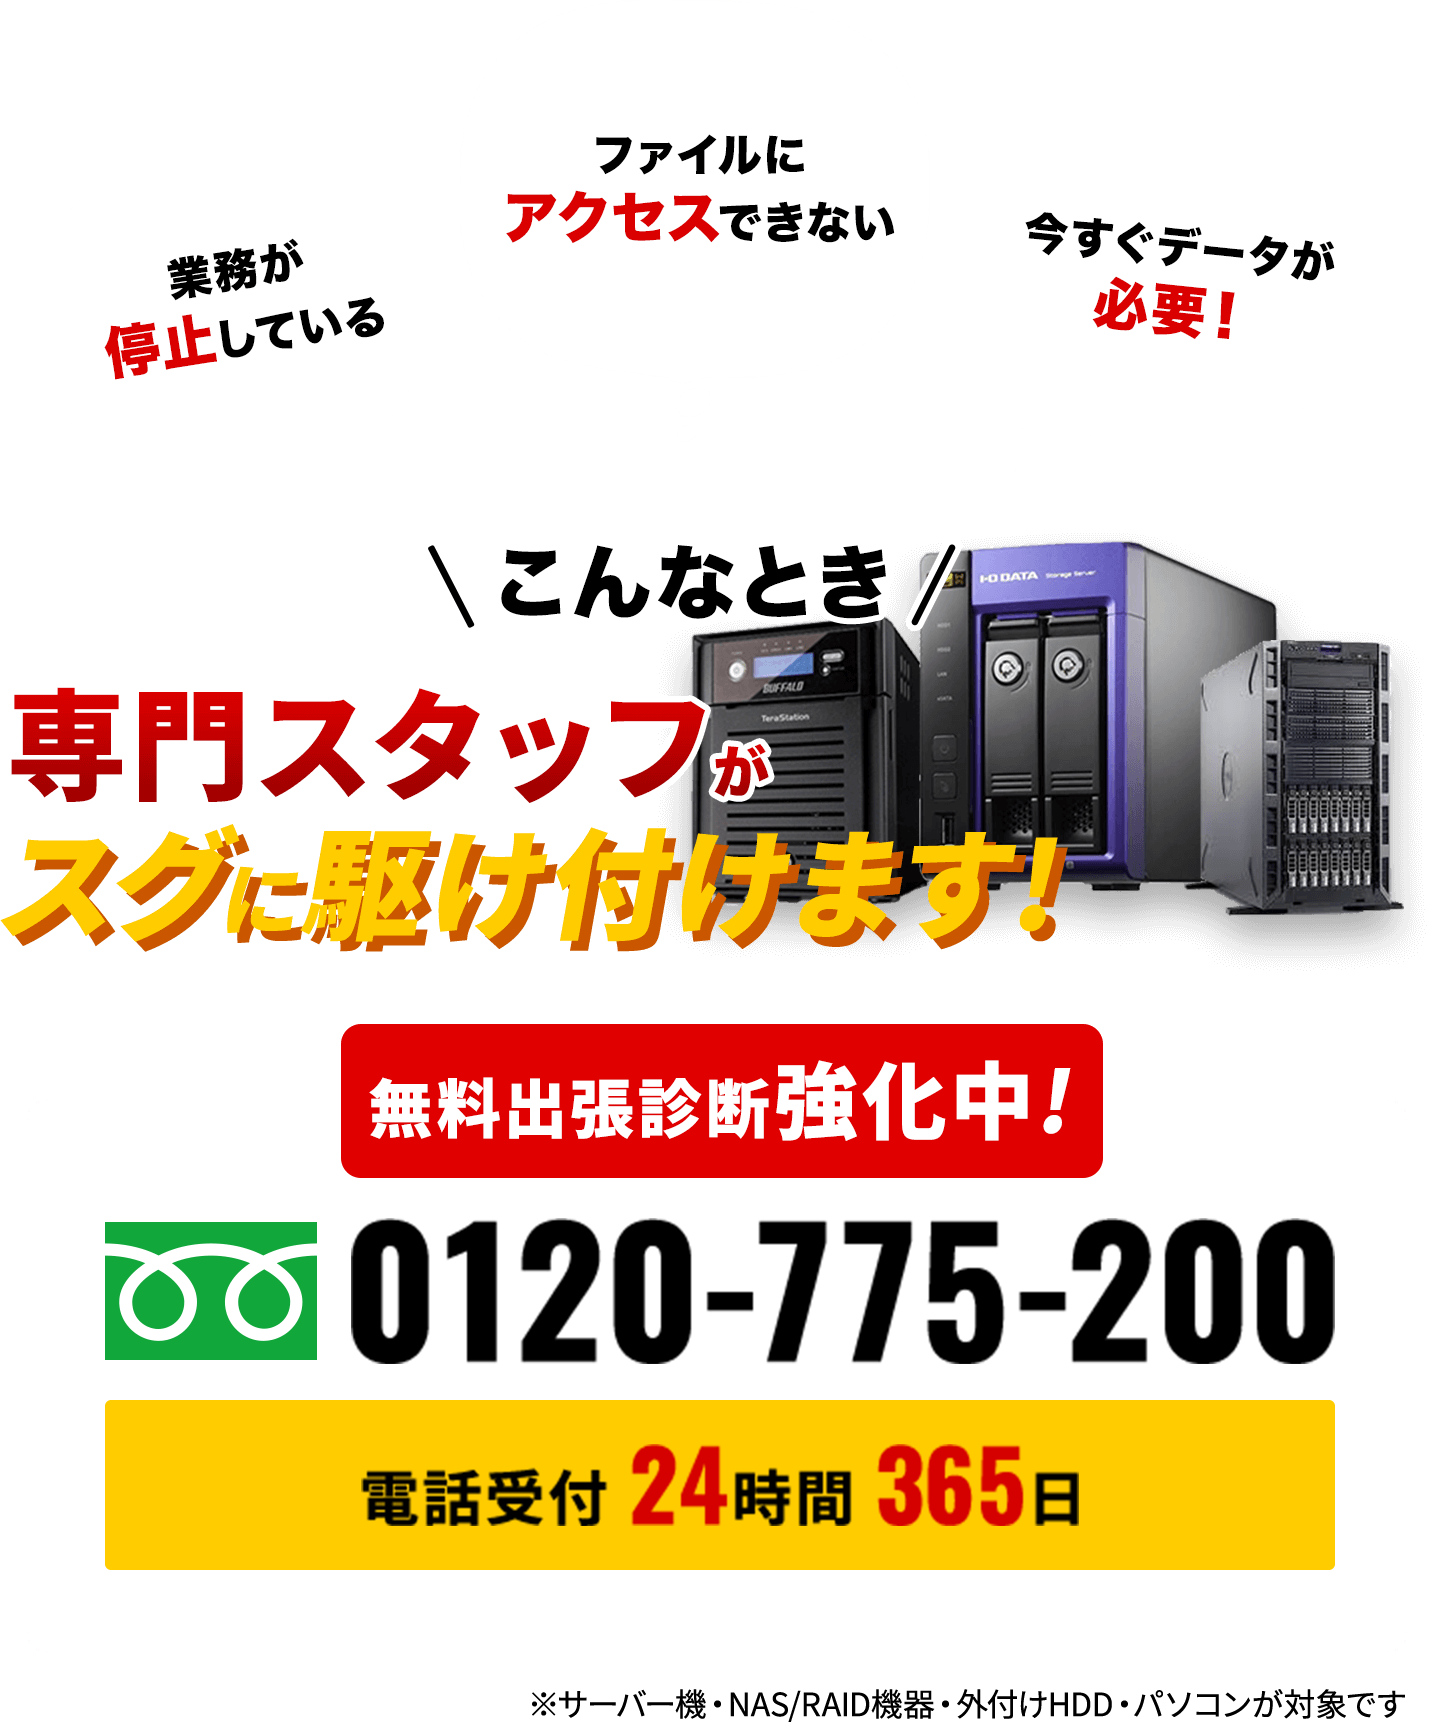 奈良県奈良市周辺データ復旧無料出張診断強化中！0120-775-200